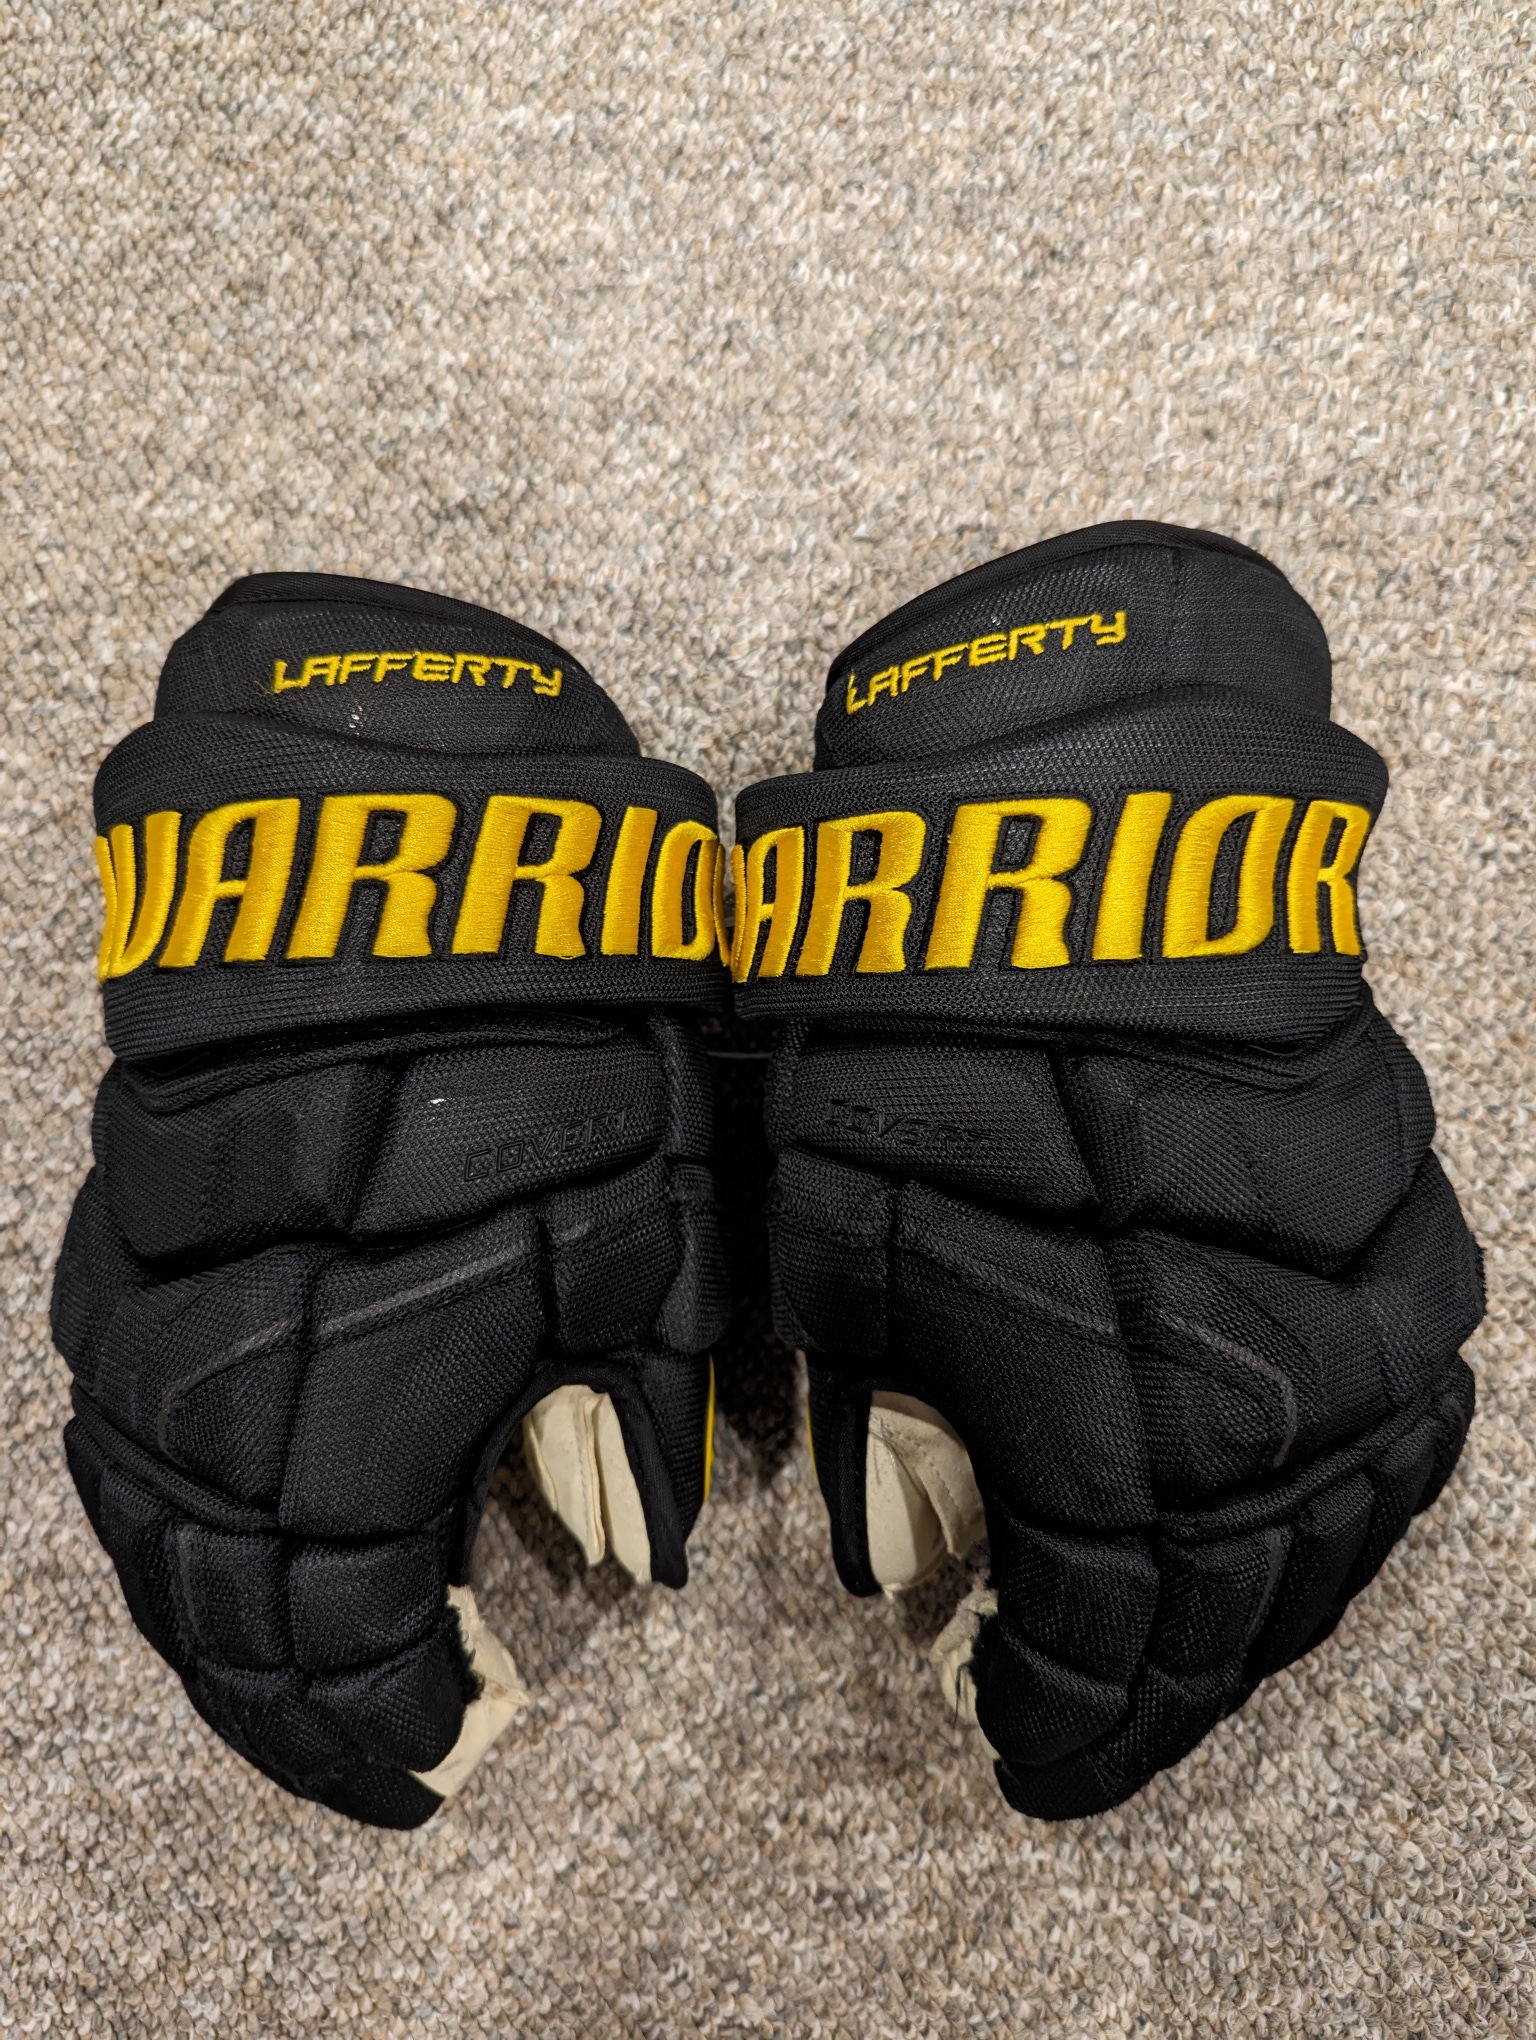 Vancouver Canucks *SKATE LOGO* Warrior Covert Pro Stock Hockey Gloves 14"